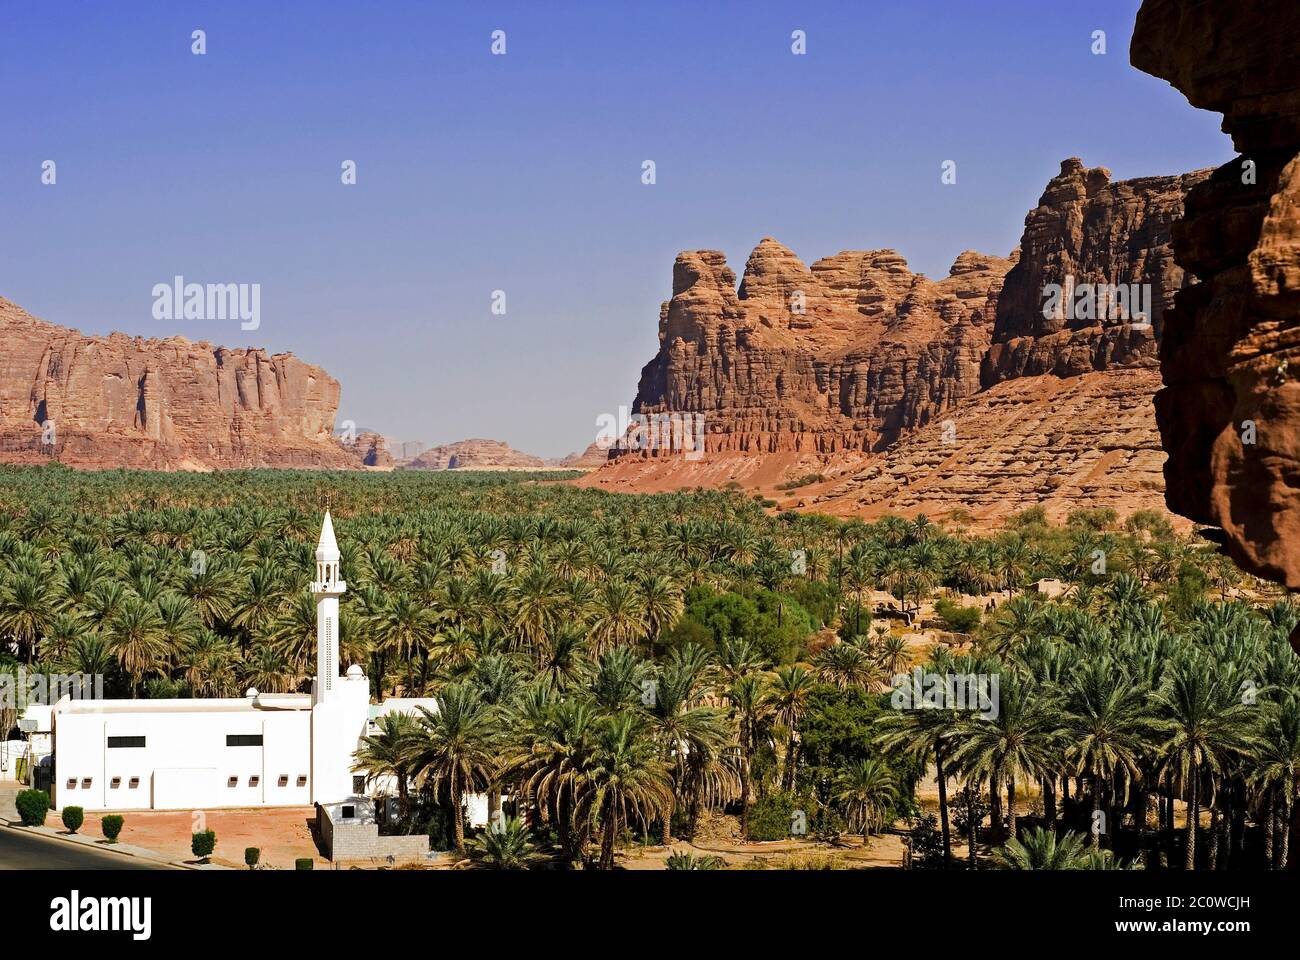 al ula oasis,saudi arabia Stock Photo